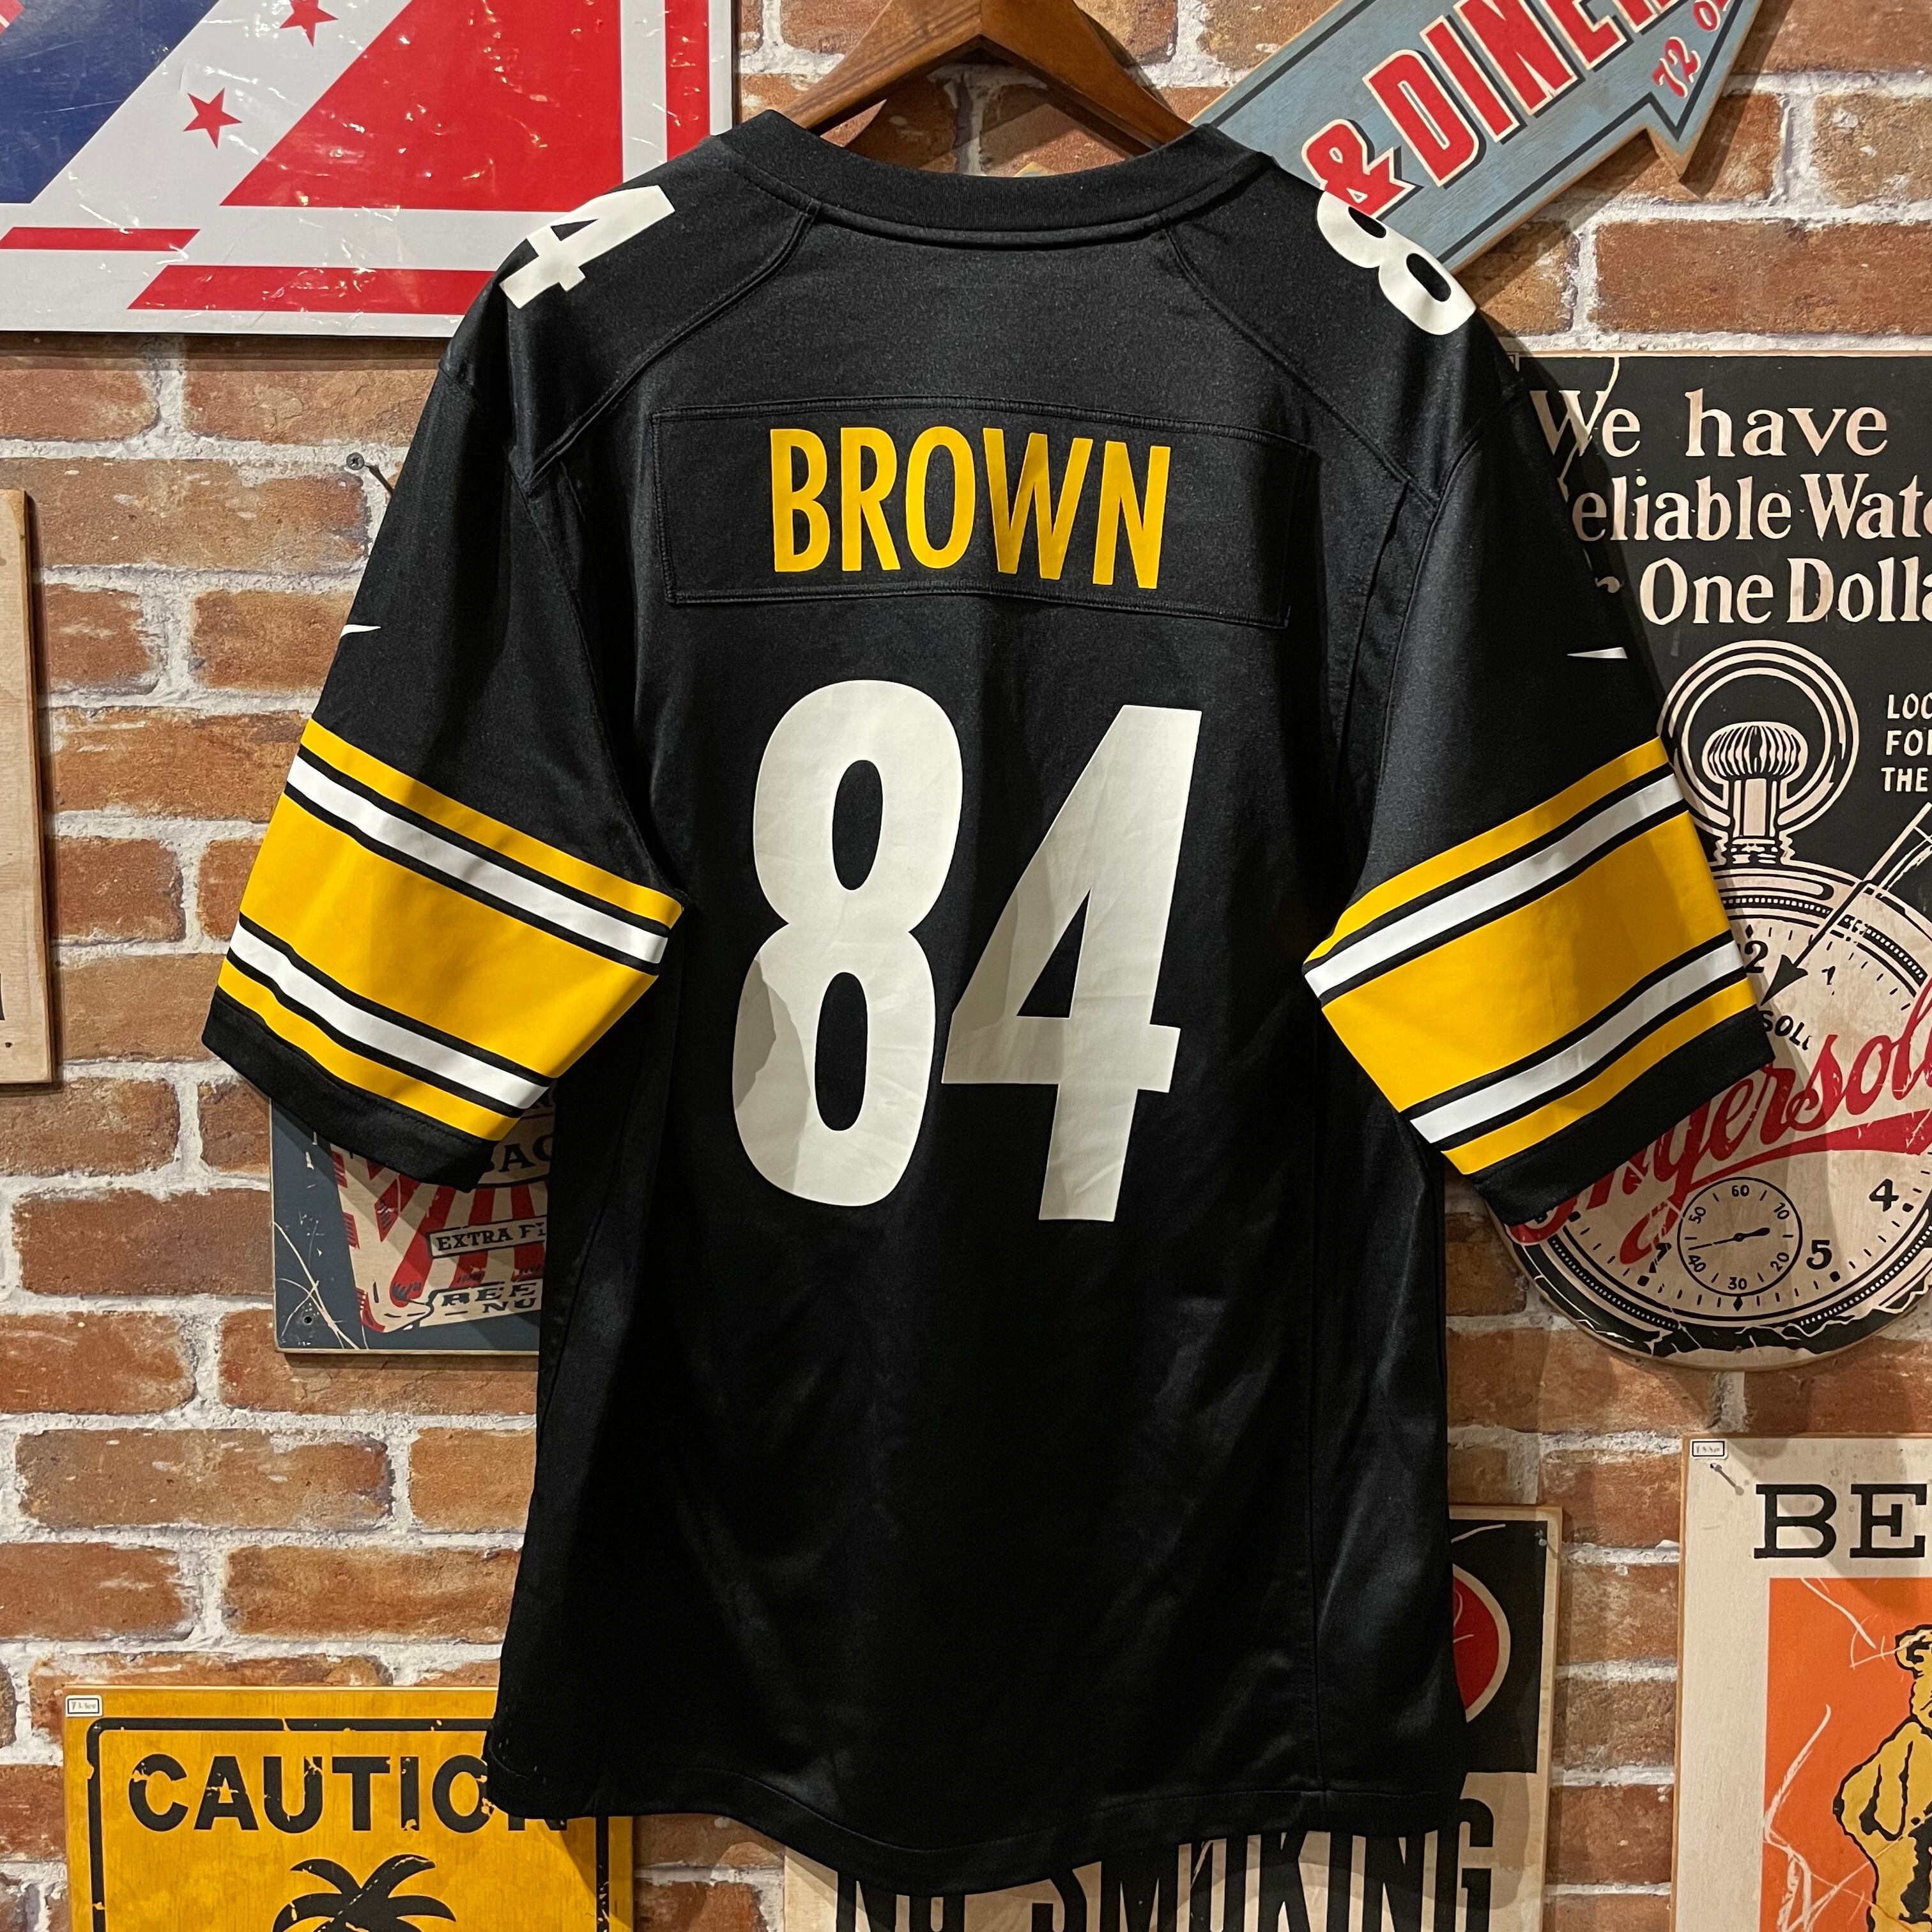 NFL NIKE スティーラーズ 84 BROWN ゲームシャツ ビッグサイズ ...